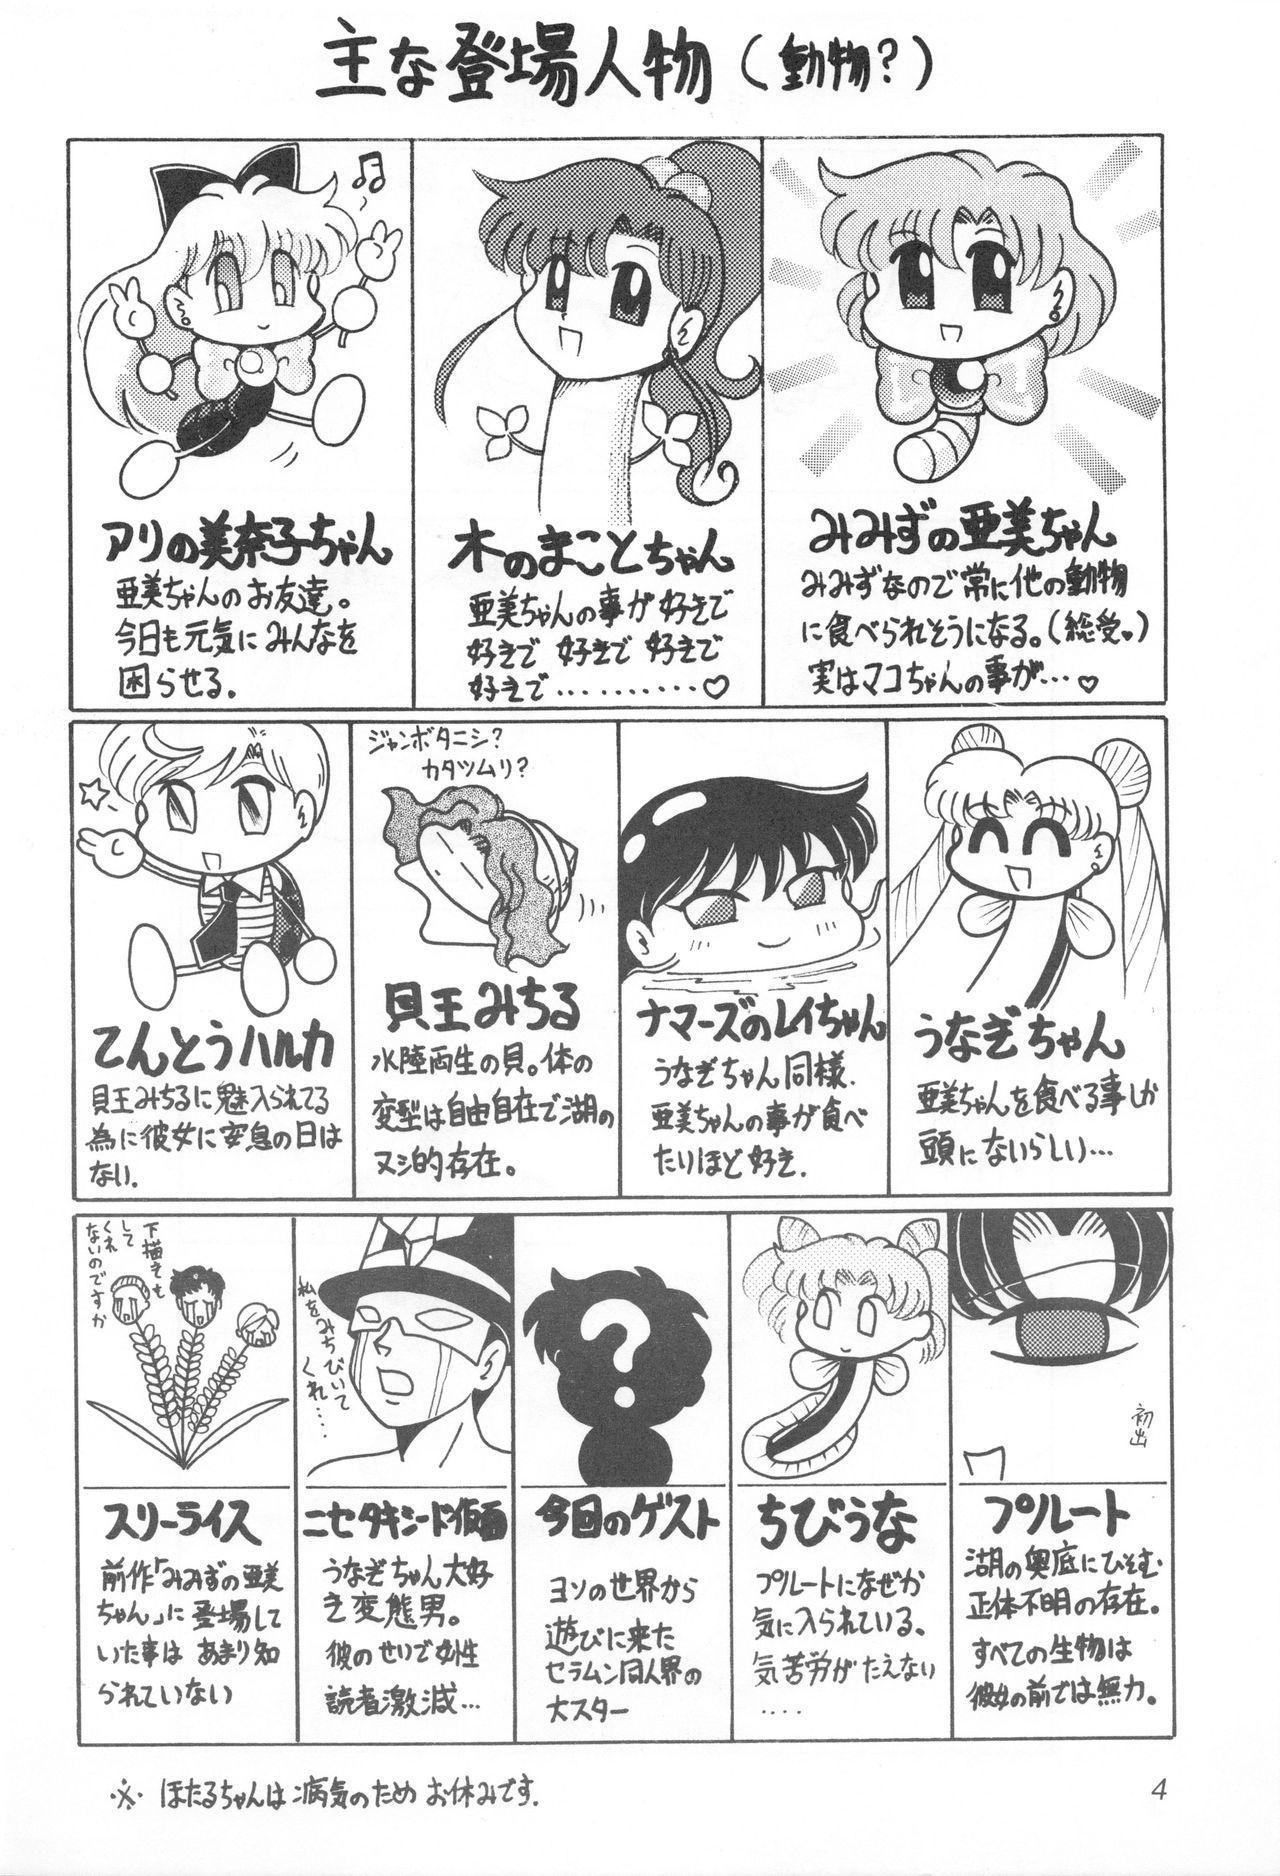 Playing Mimizu no Ami-chan Vol. 2 - Sailor moon Str8 - Page 3